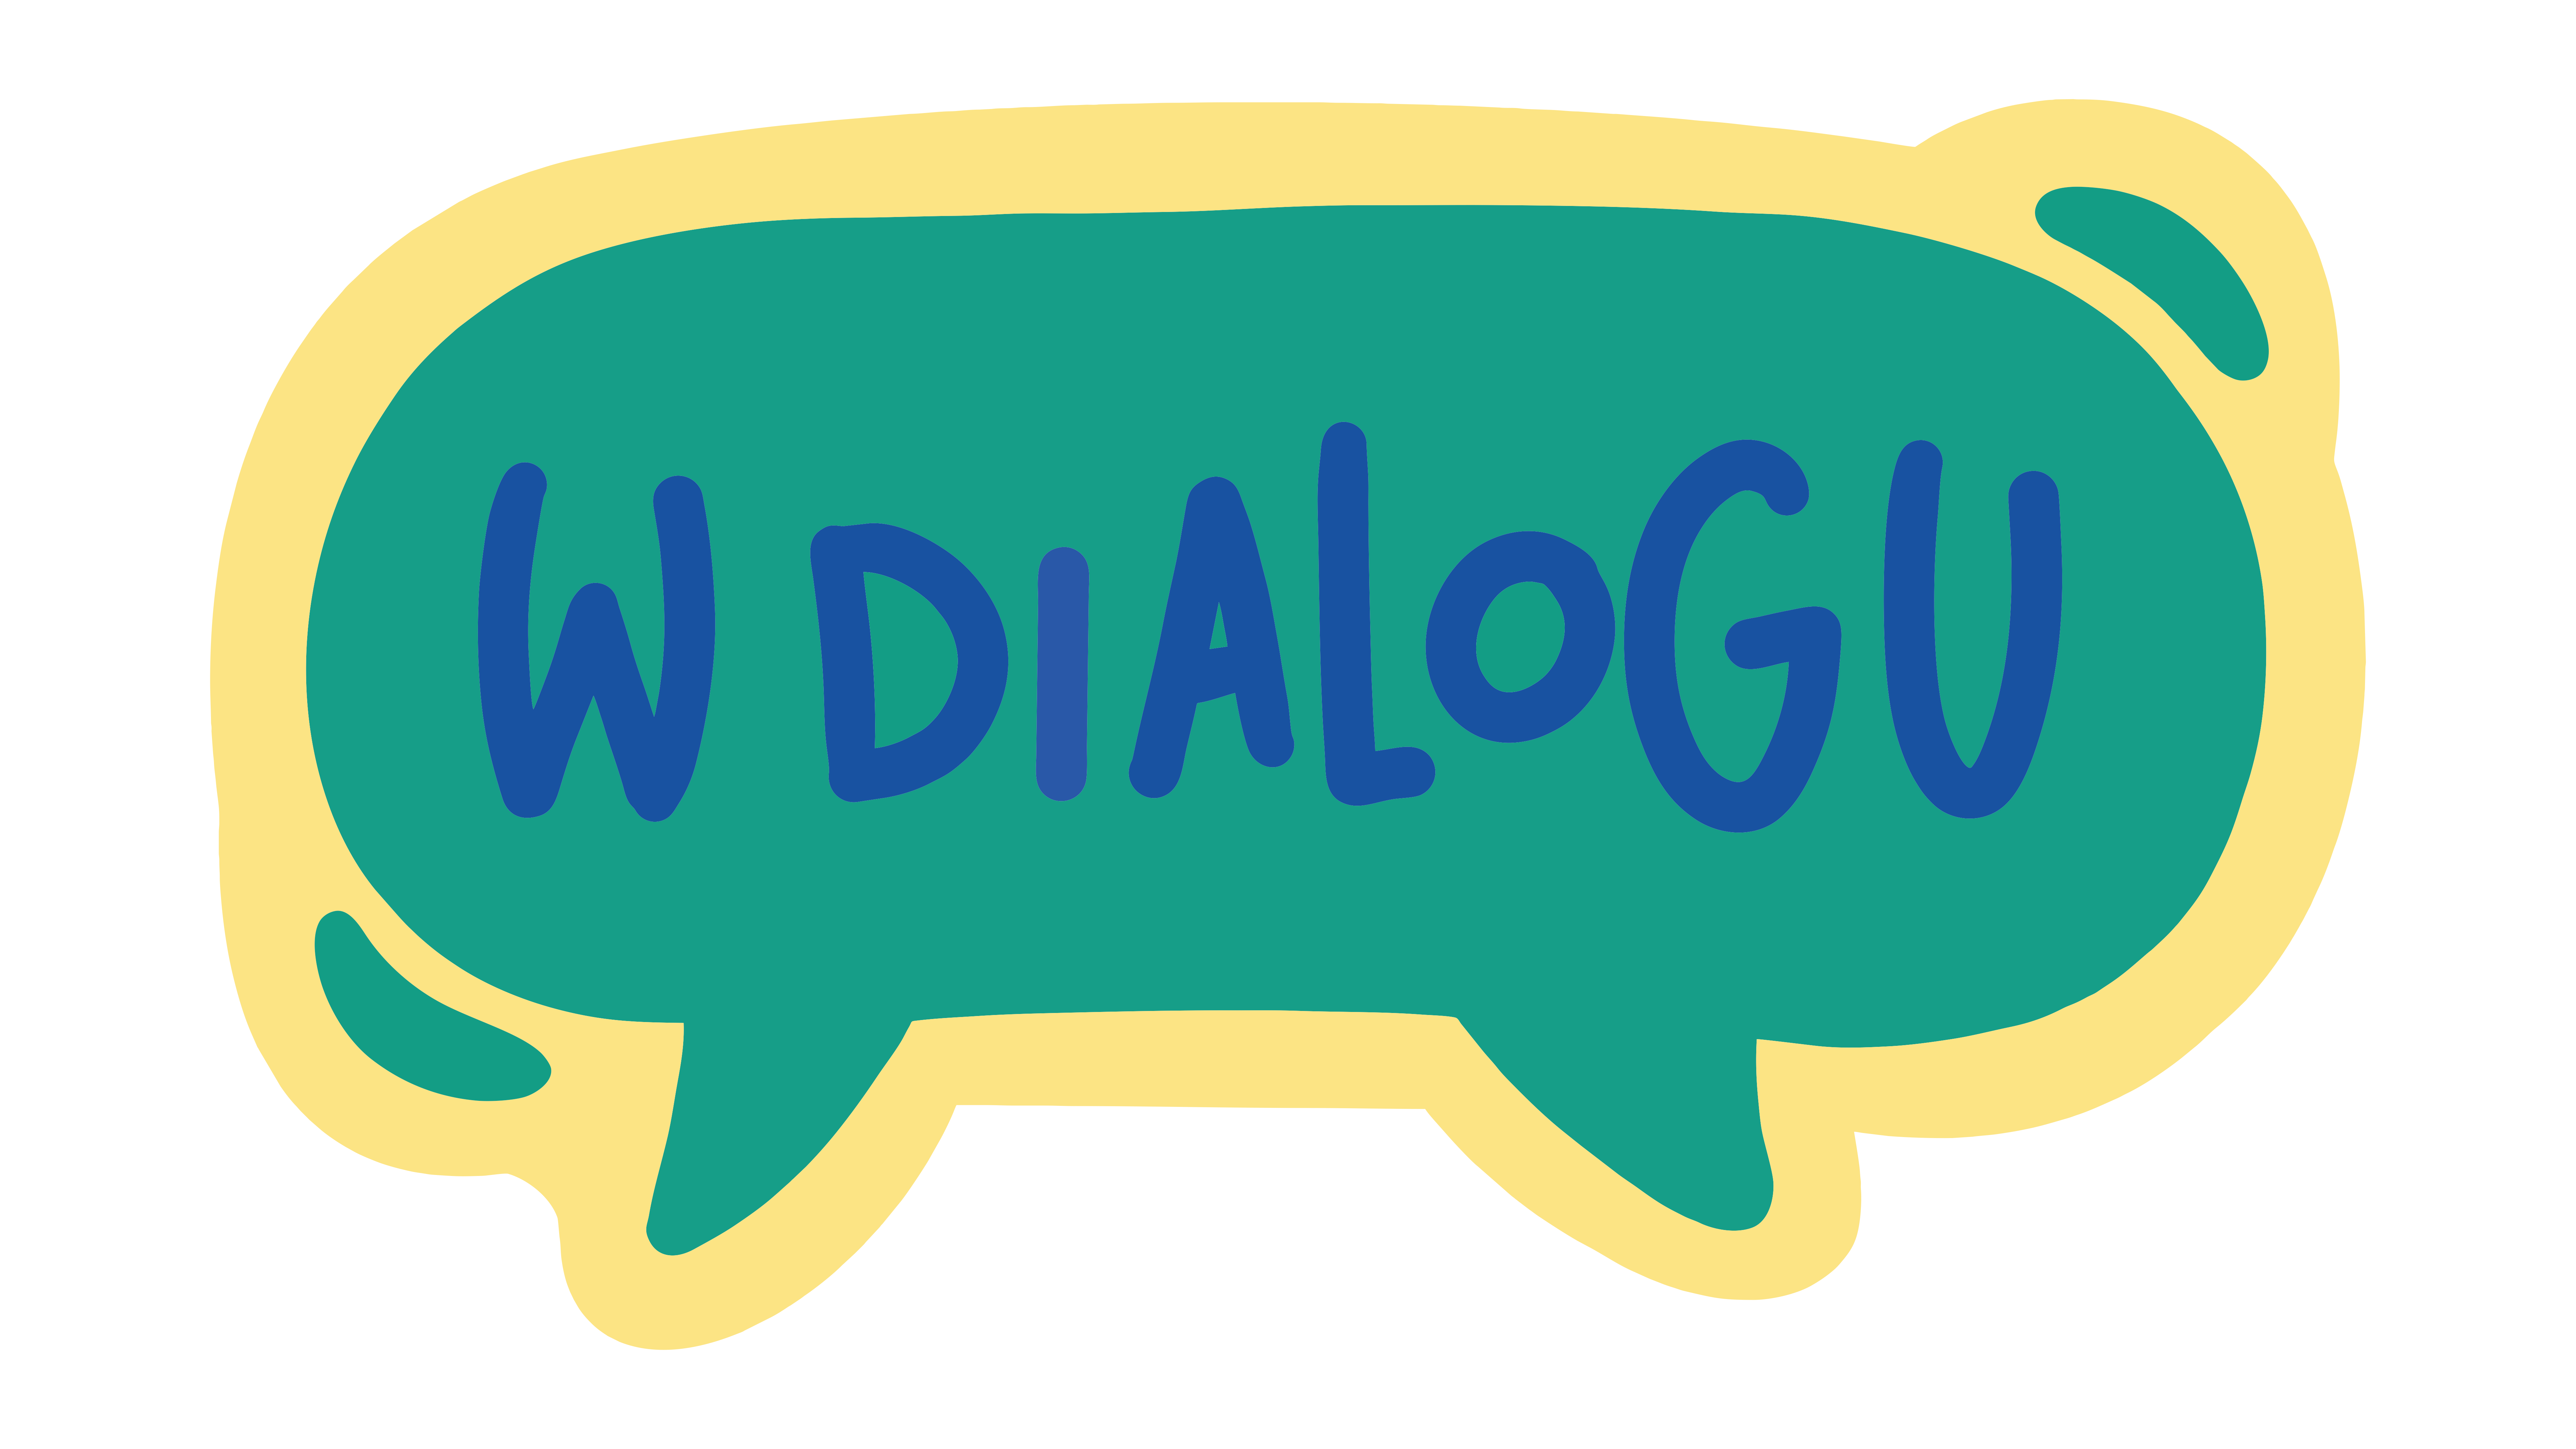 Podcast "W Dialogu"